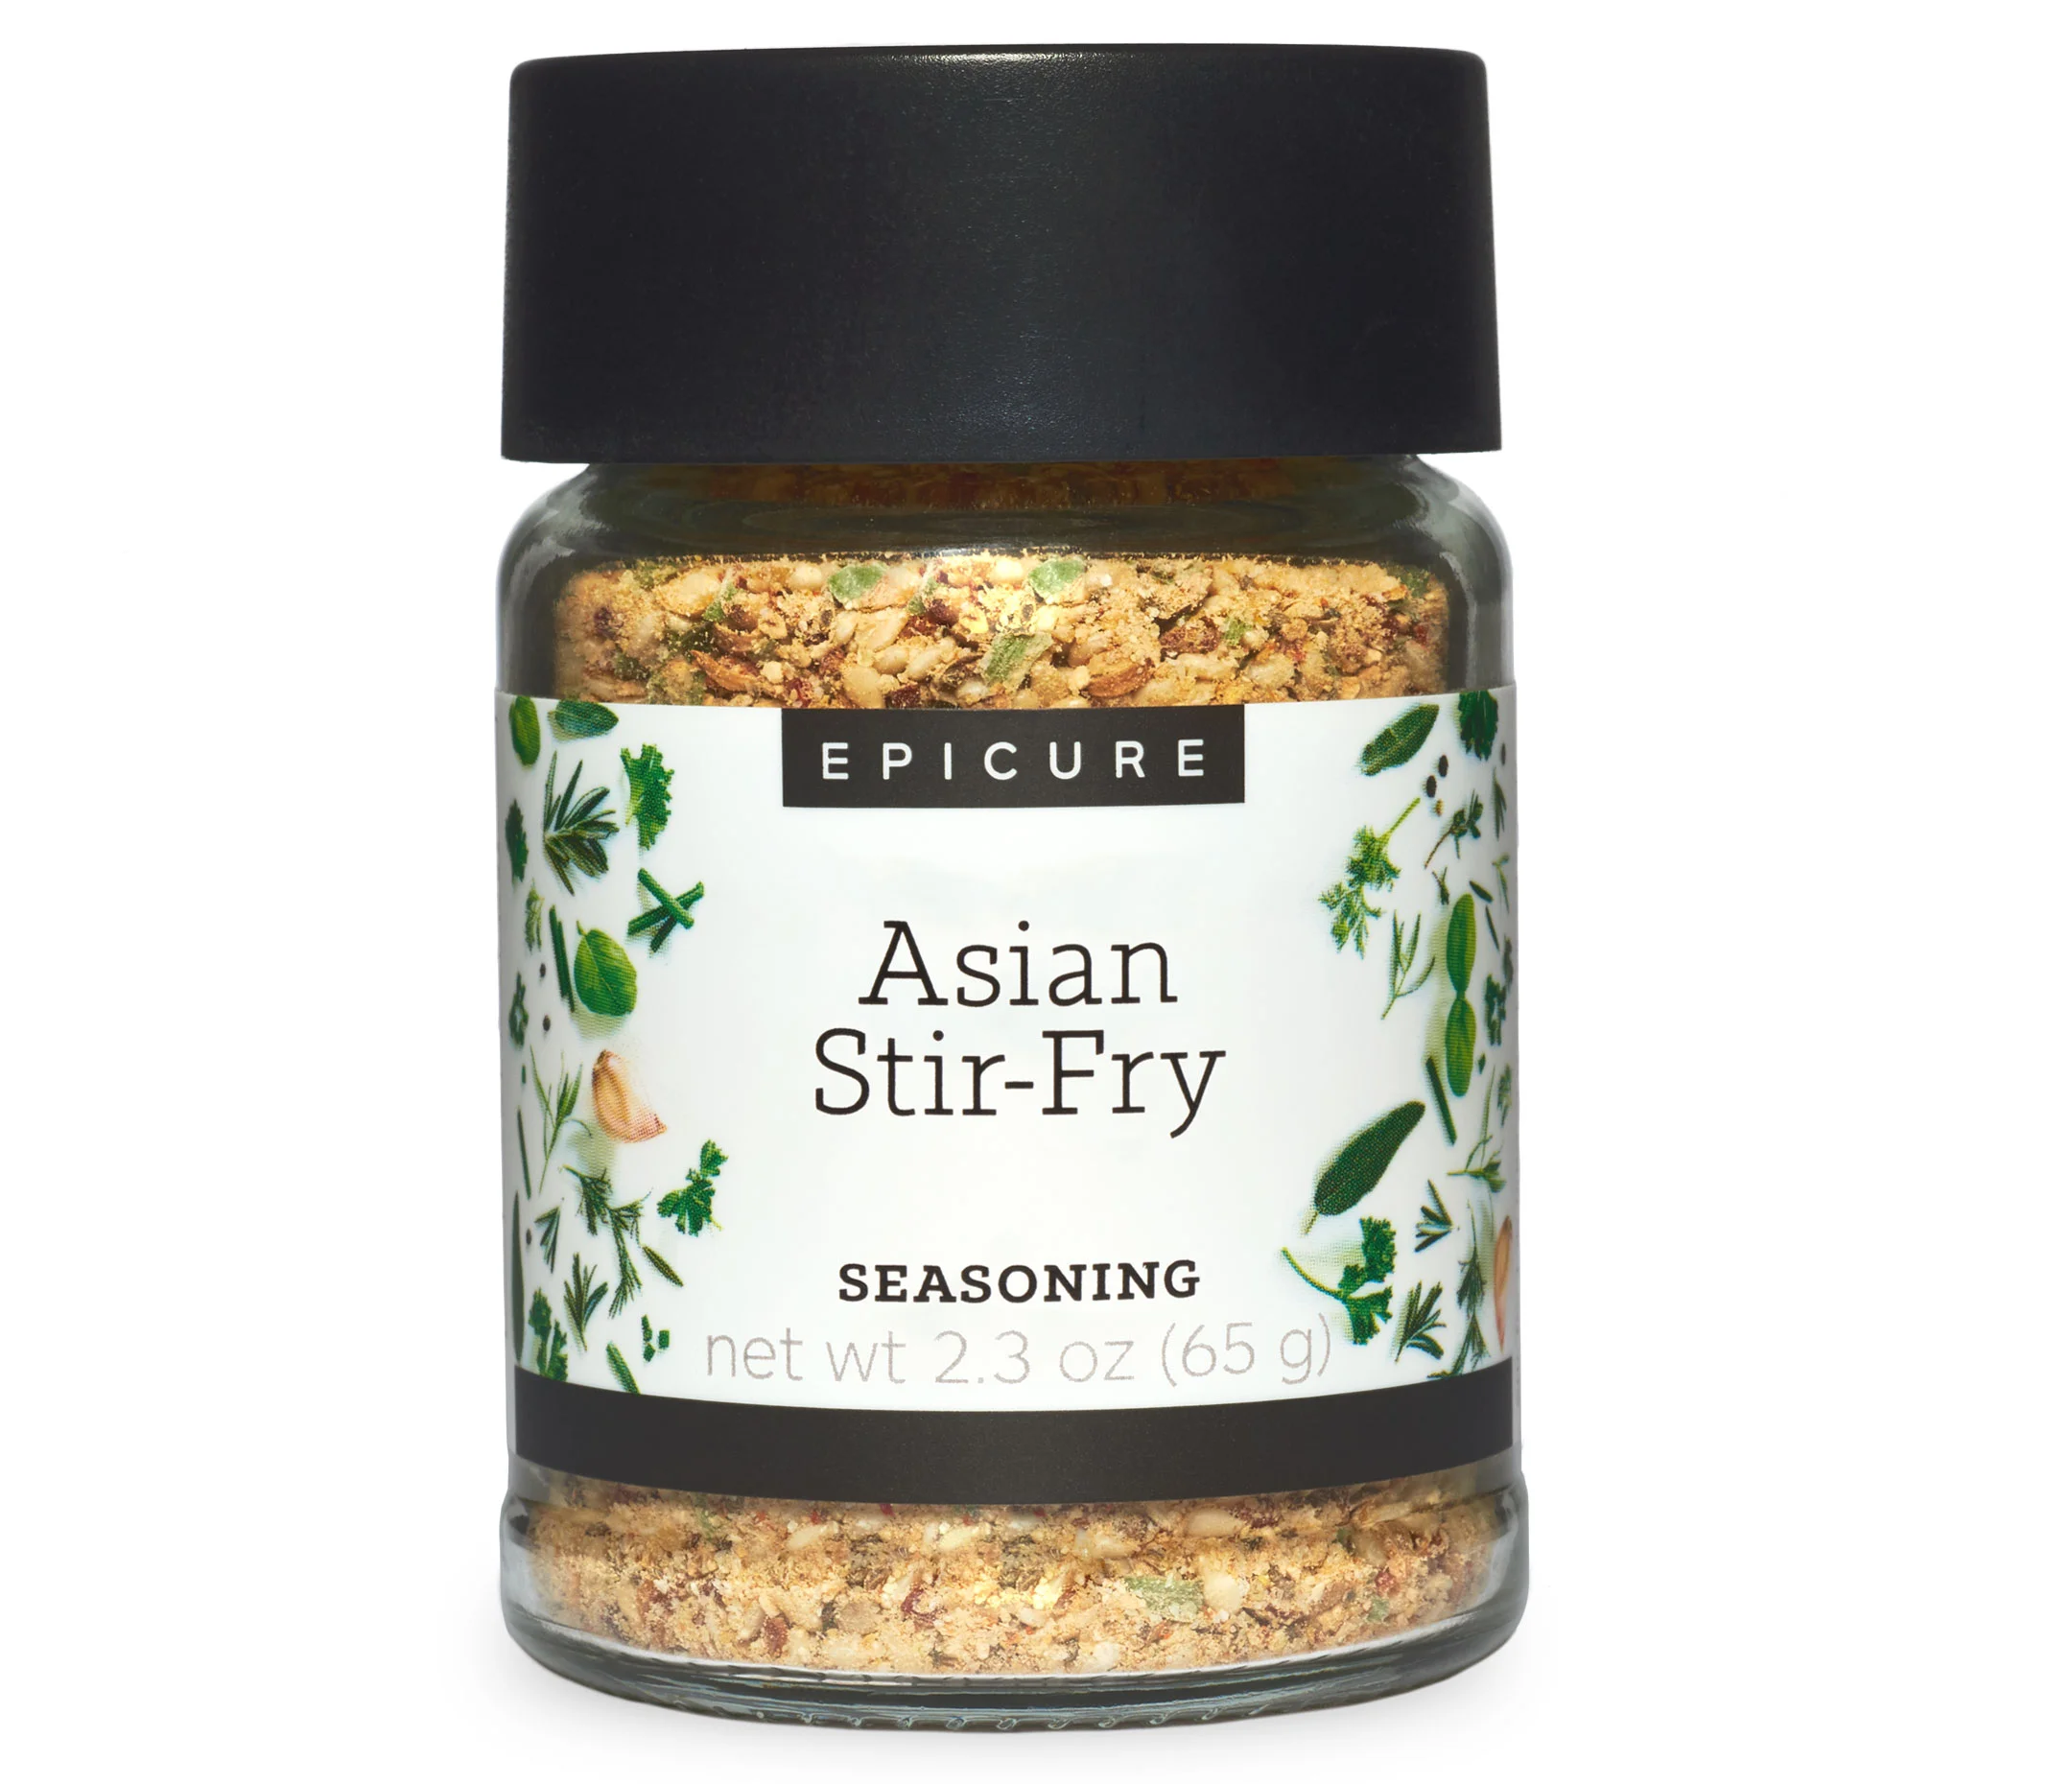 Asian Stir-Fry Seasoning